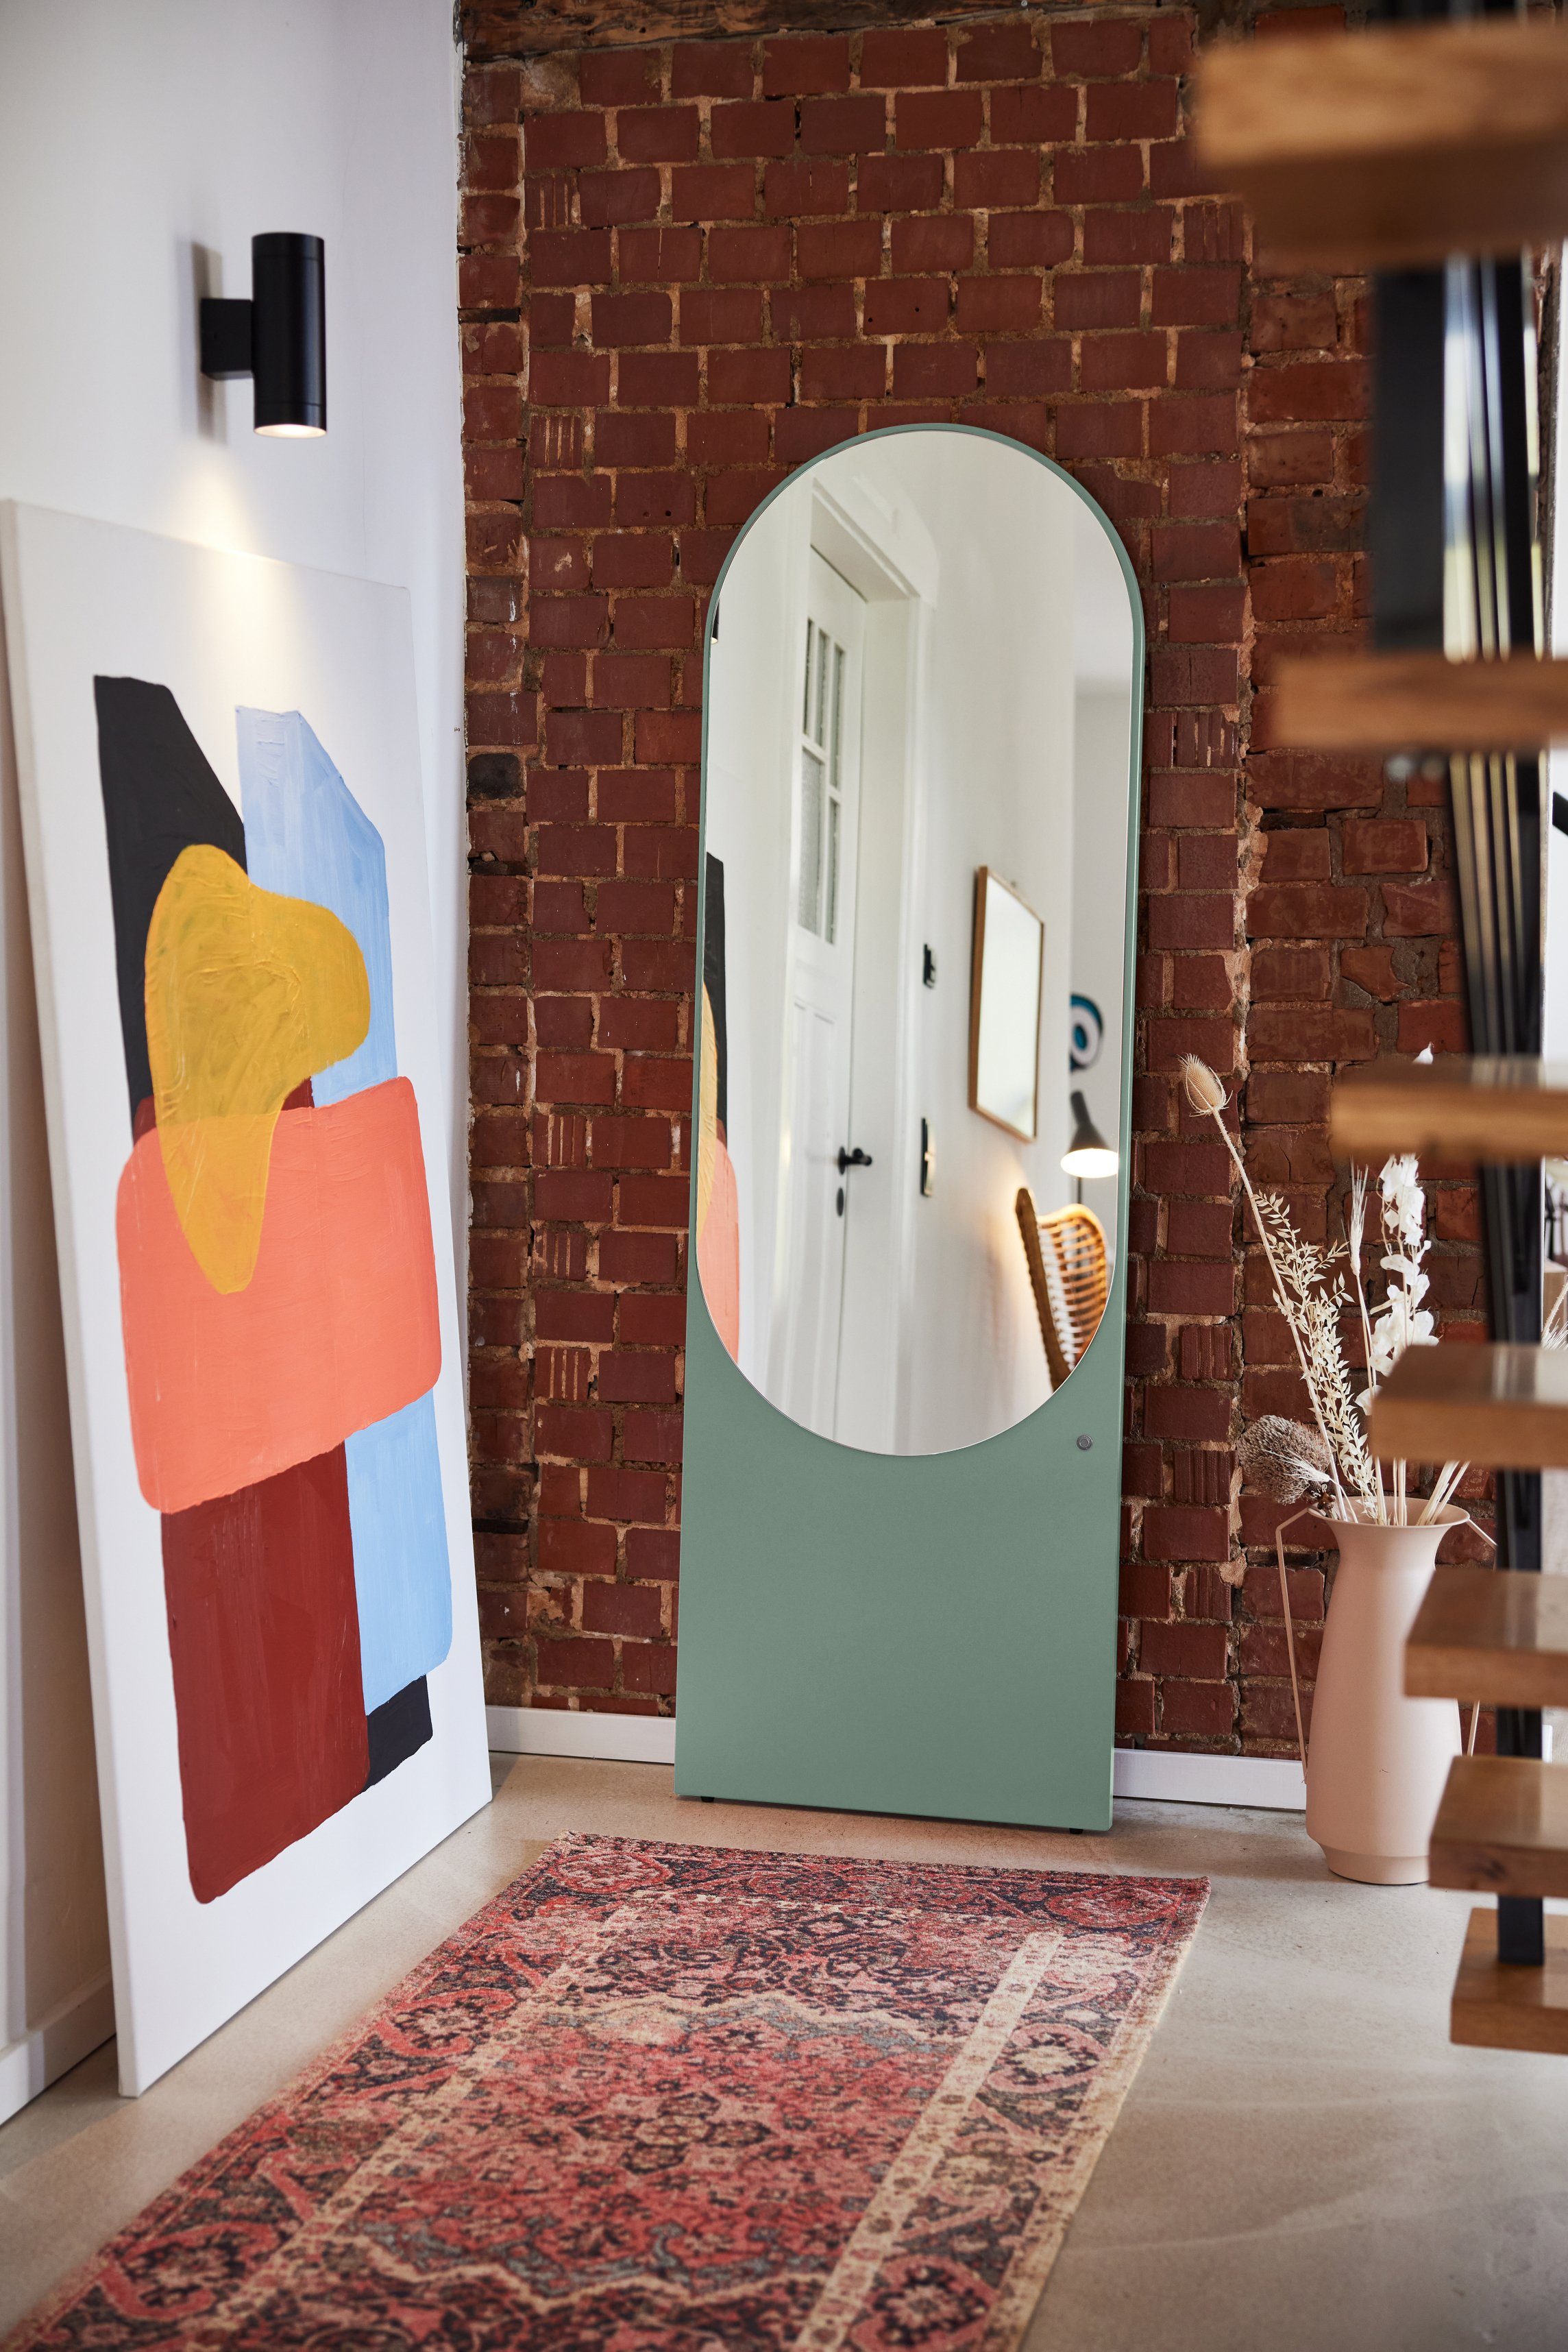 TOM TAILOR HOME Spiegel Farben lackiert, Form besonderer hochwertig schönen in & MIRROR eucalyptus_055 farbiges in Wandlehnender - - Standspiegel Highlight vielen COLOR